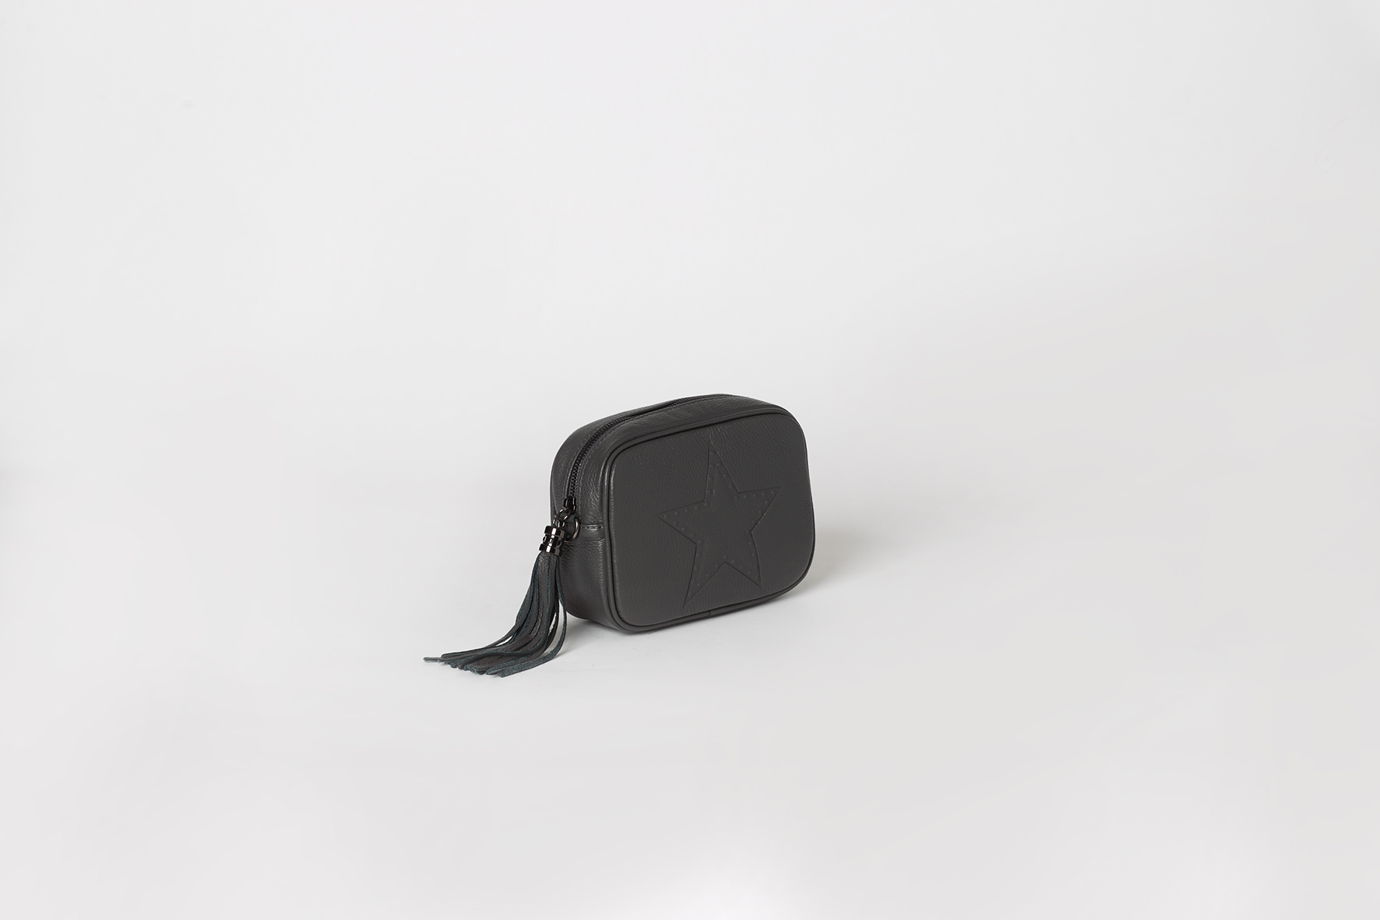 Кожаная маленькая сумка через плечо AMY leather mini cross body bag. В наличии в Москве